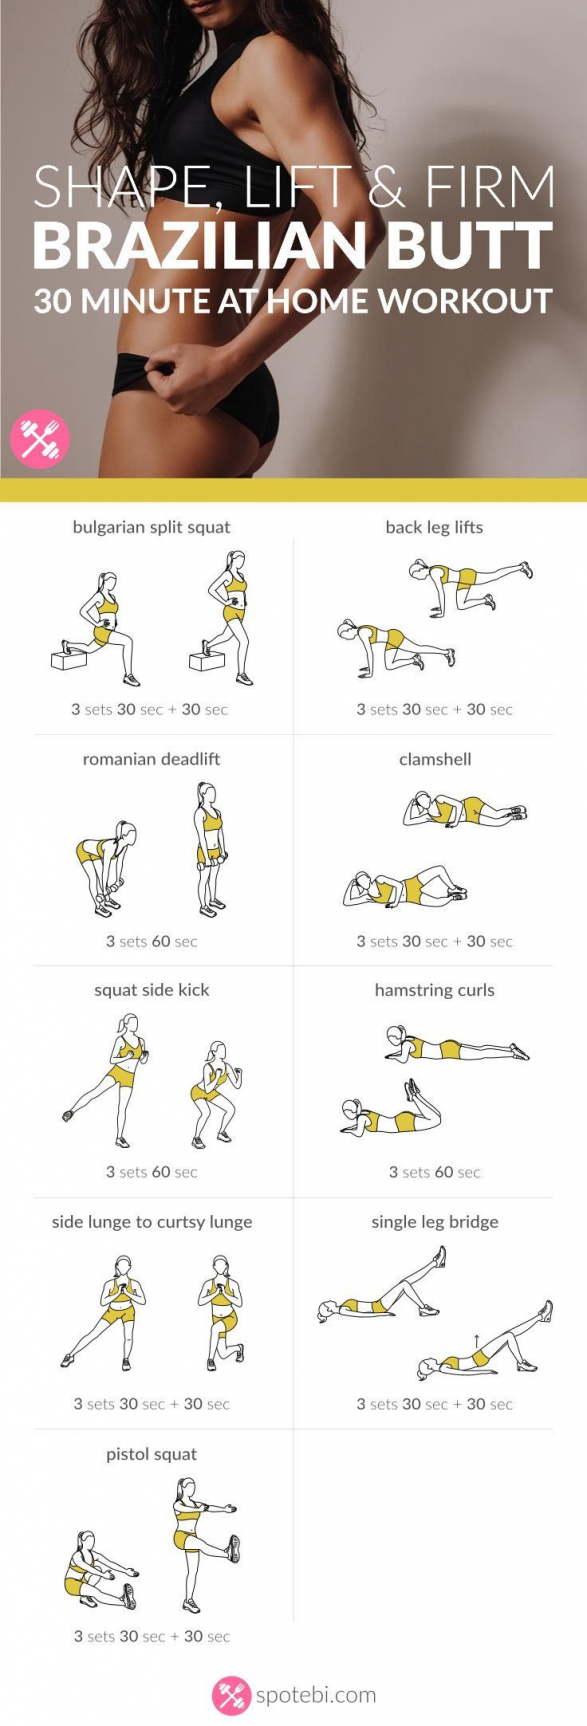 Shape, Lift & Firm | Brazilian Butt Workout For Women -   24 workouts at home butt ideas